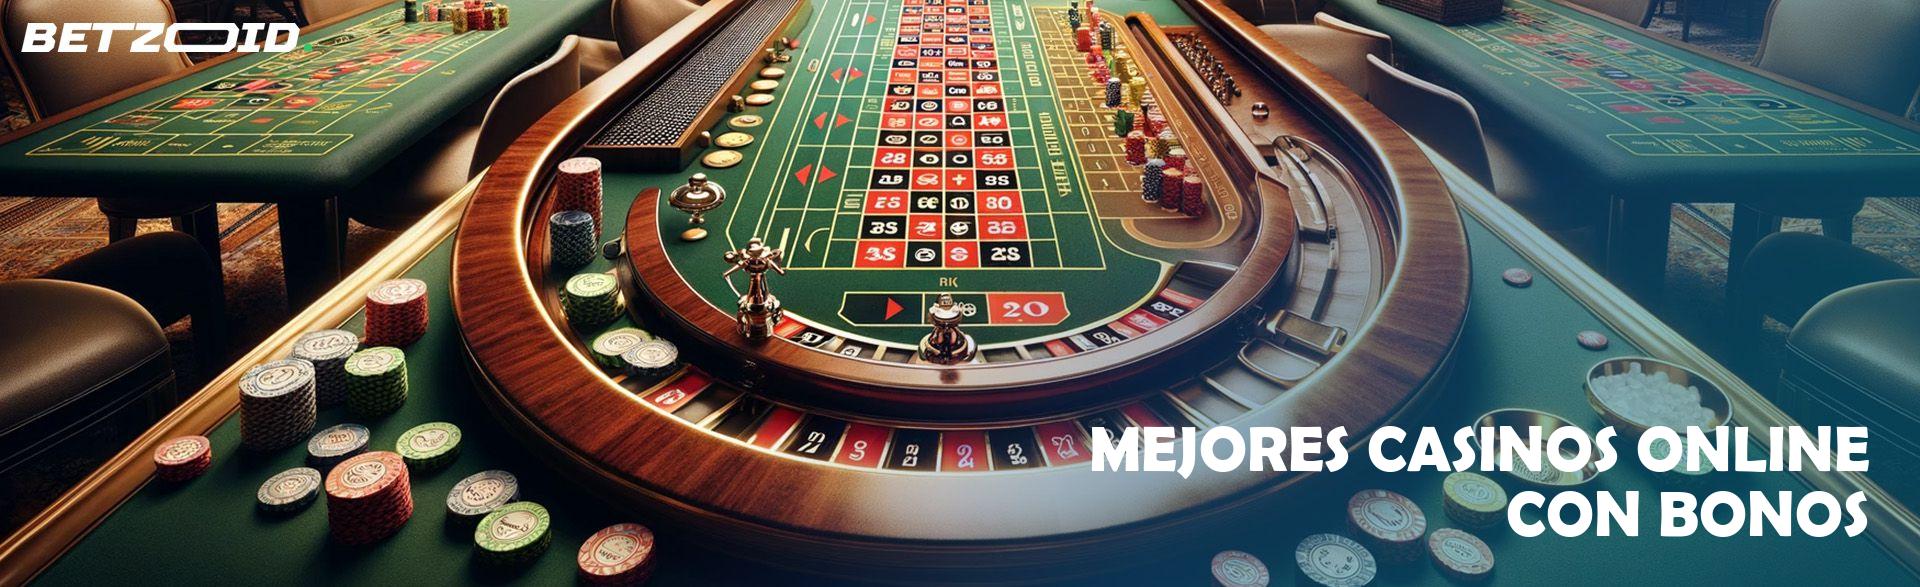 Mejores Casinos Online con Bonos.